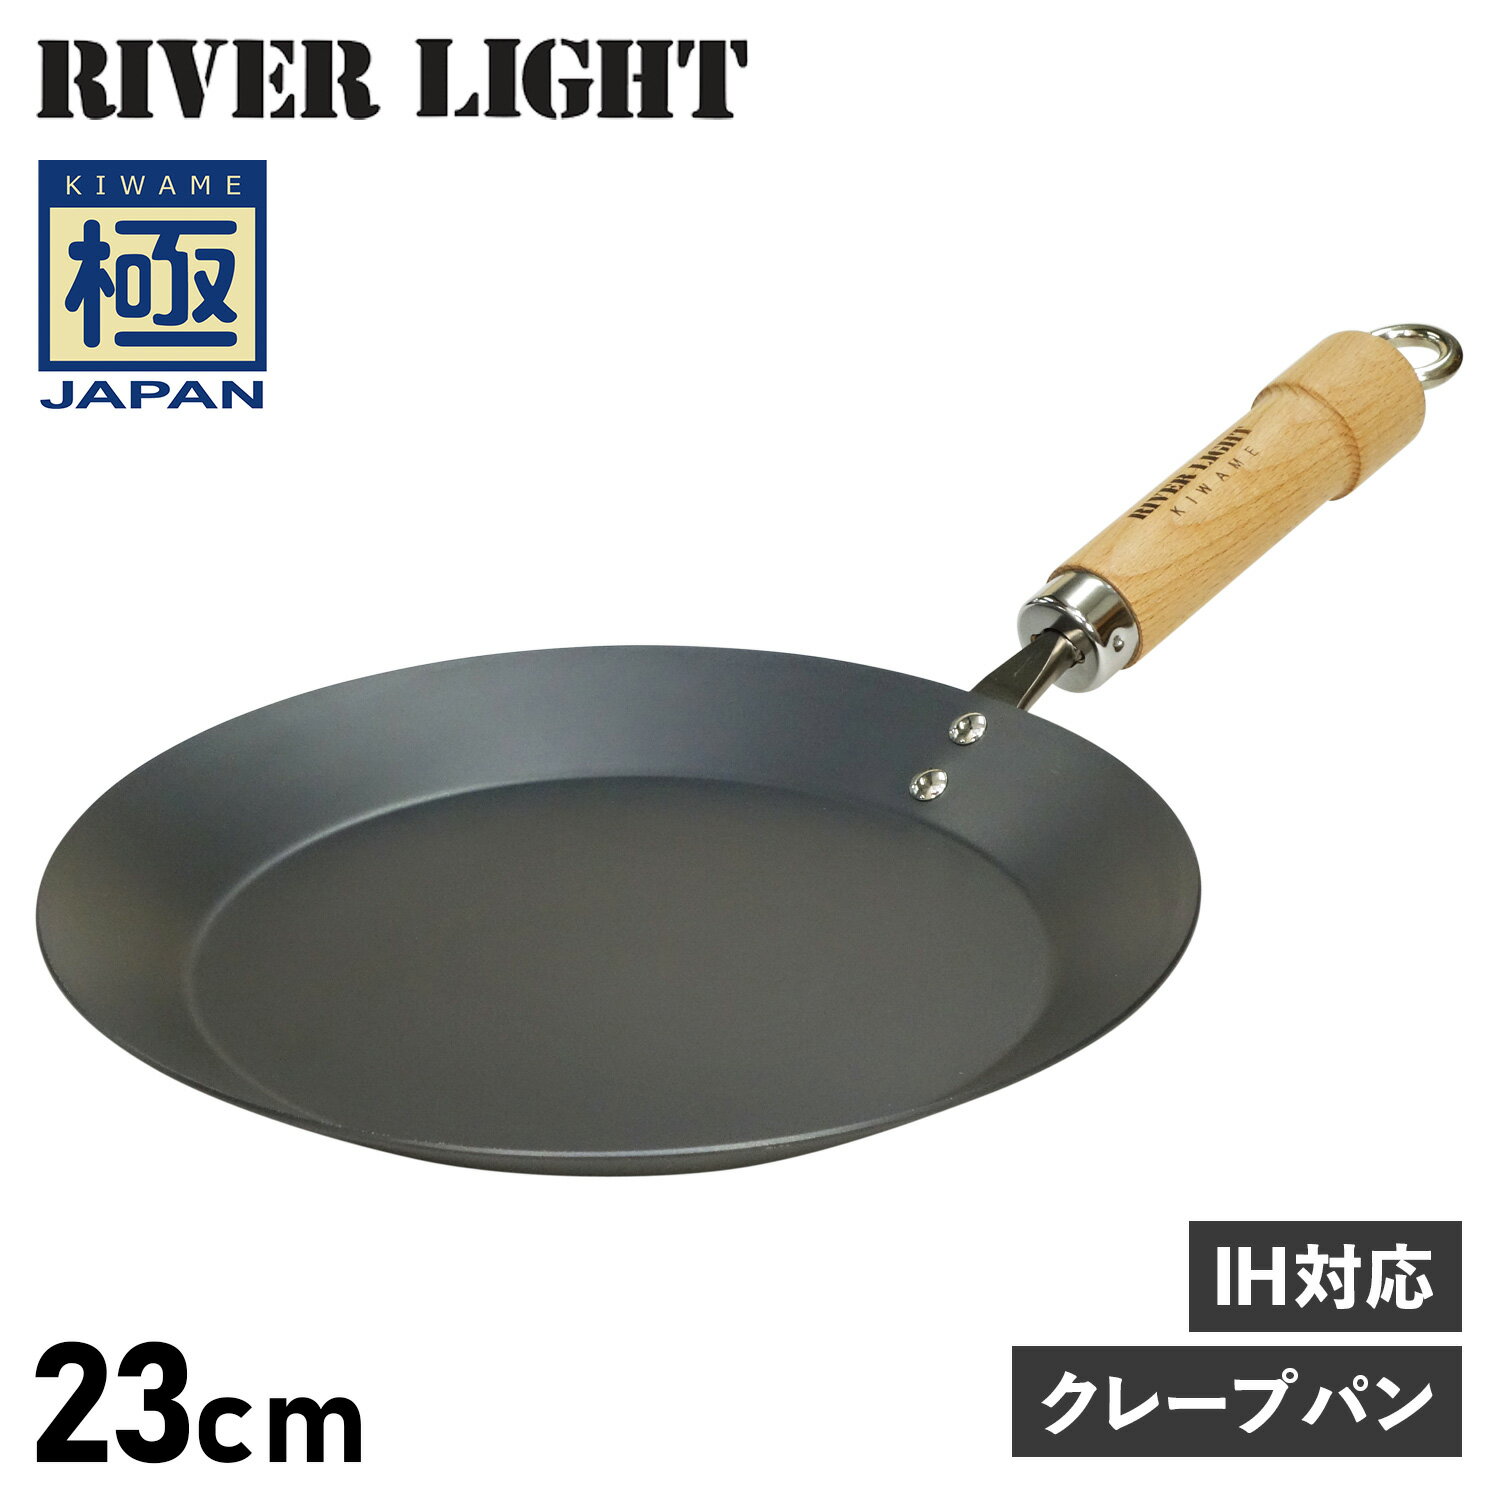 RIVER LIGHT 極JAPAN リバーライト 極 クレープメーカー クレープパン フライパン 23cm IH ガス対応 鉄 J1723 アウトドア